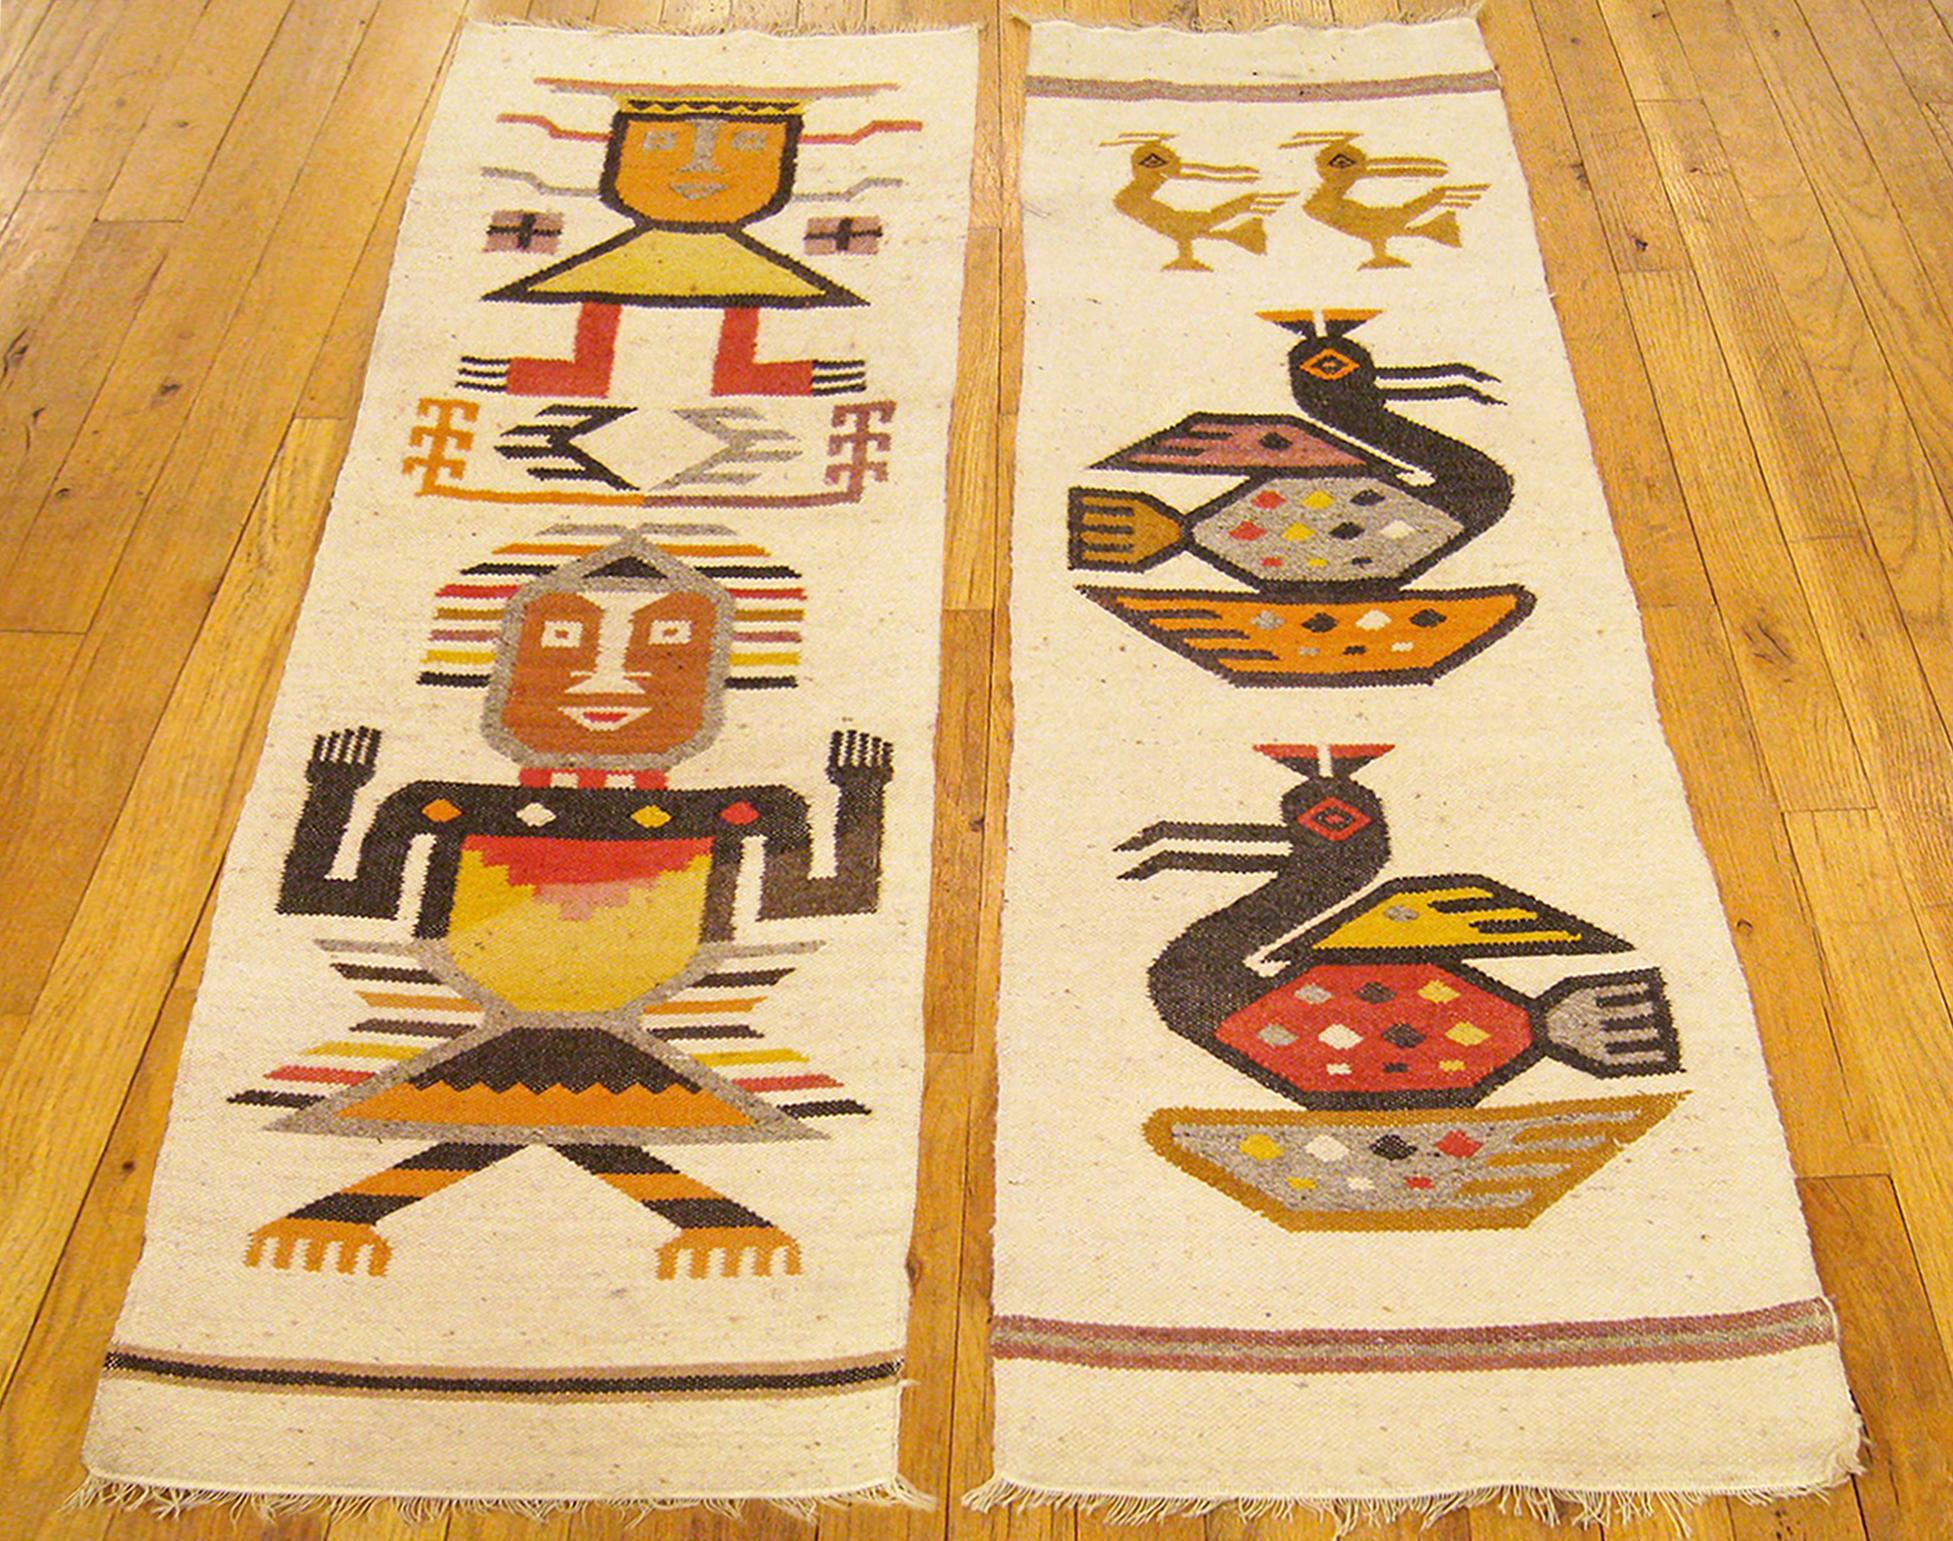 A pair of Vintage America Navajo rugs.

A pair of vintage American Navajo rugs, in small size, size 3'8